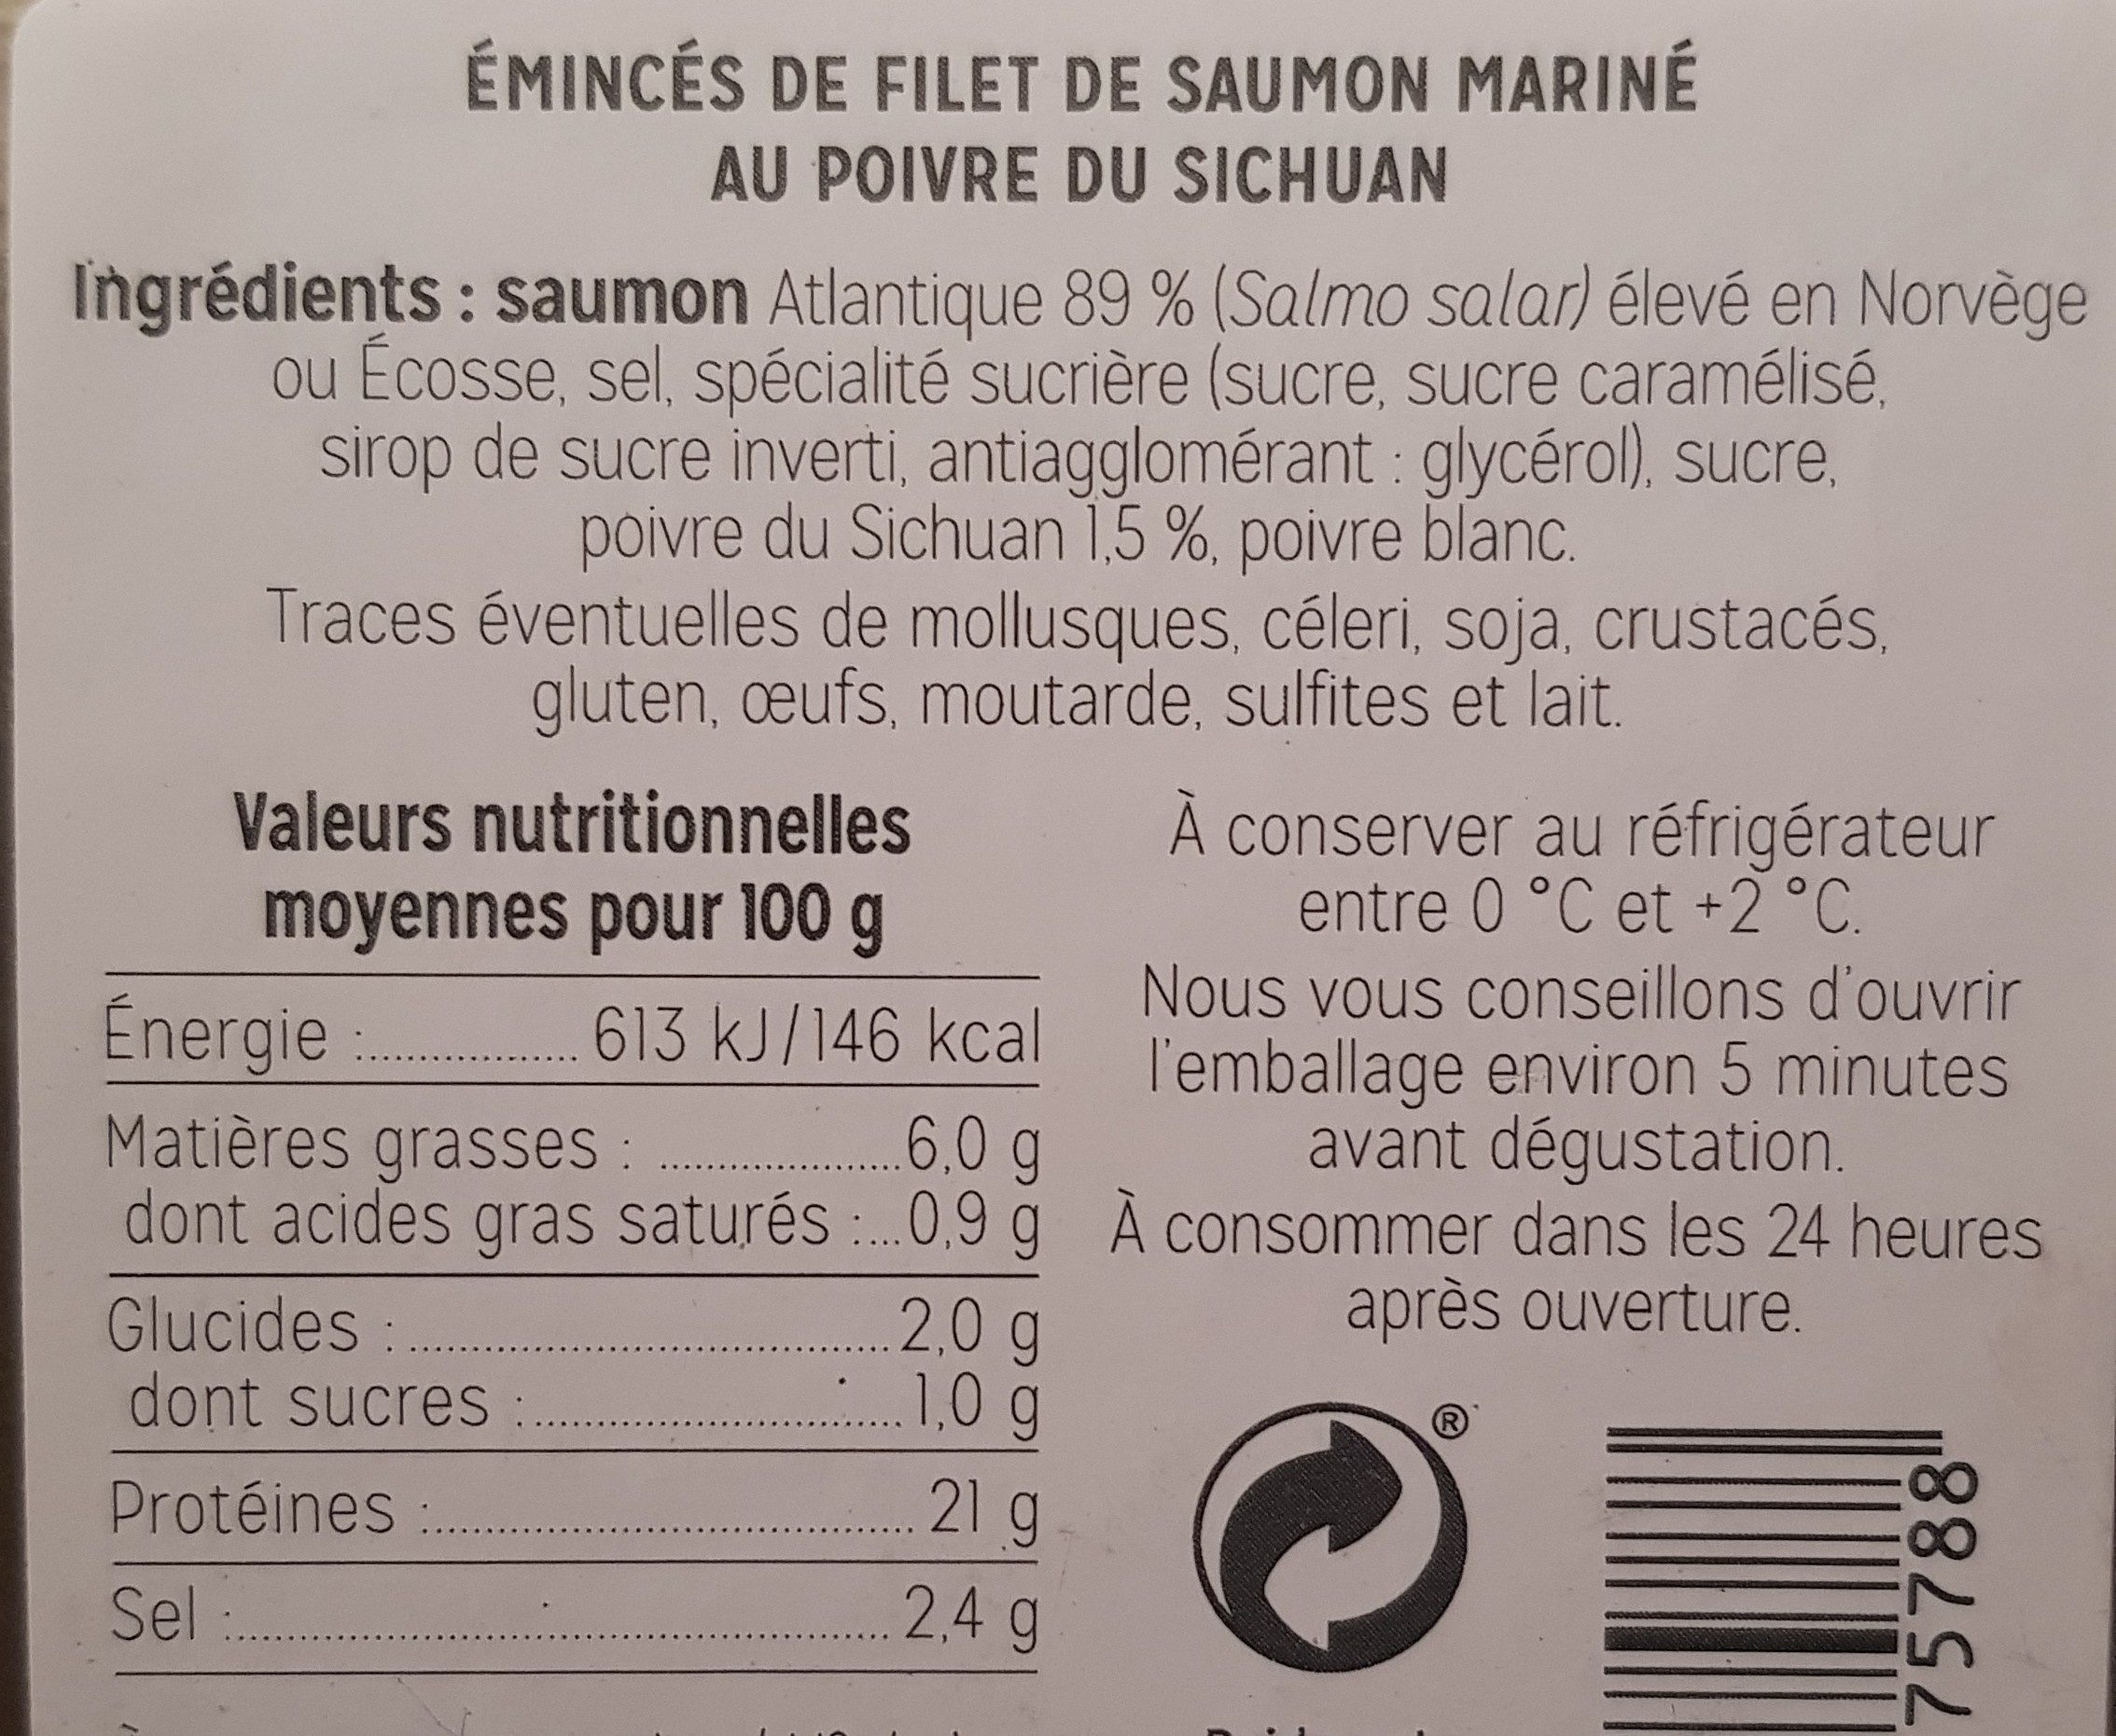 Emincés mariné au poivre du sichuan - Ingredienser - fr